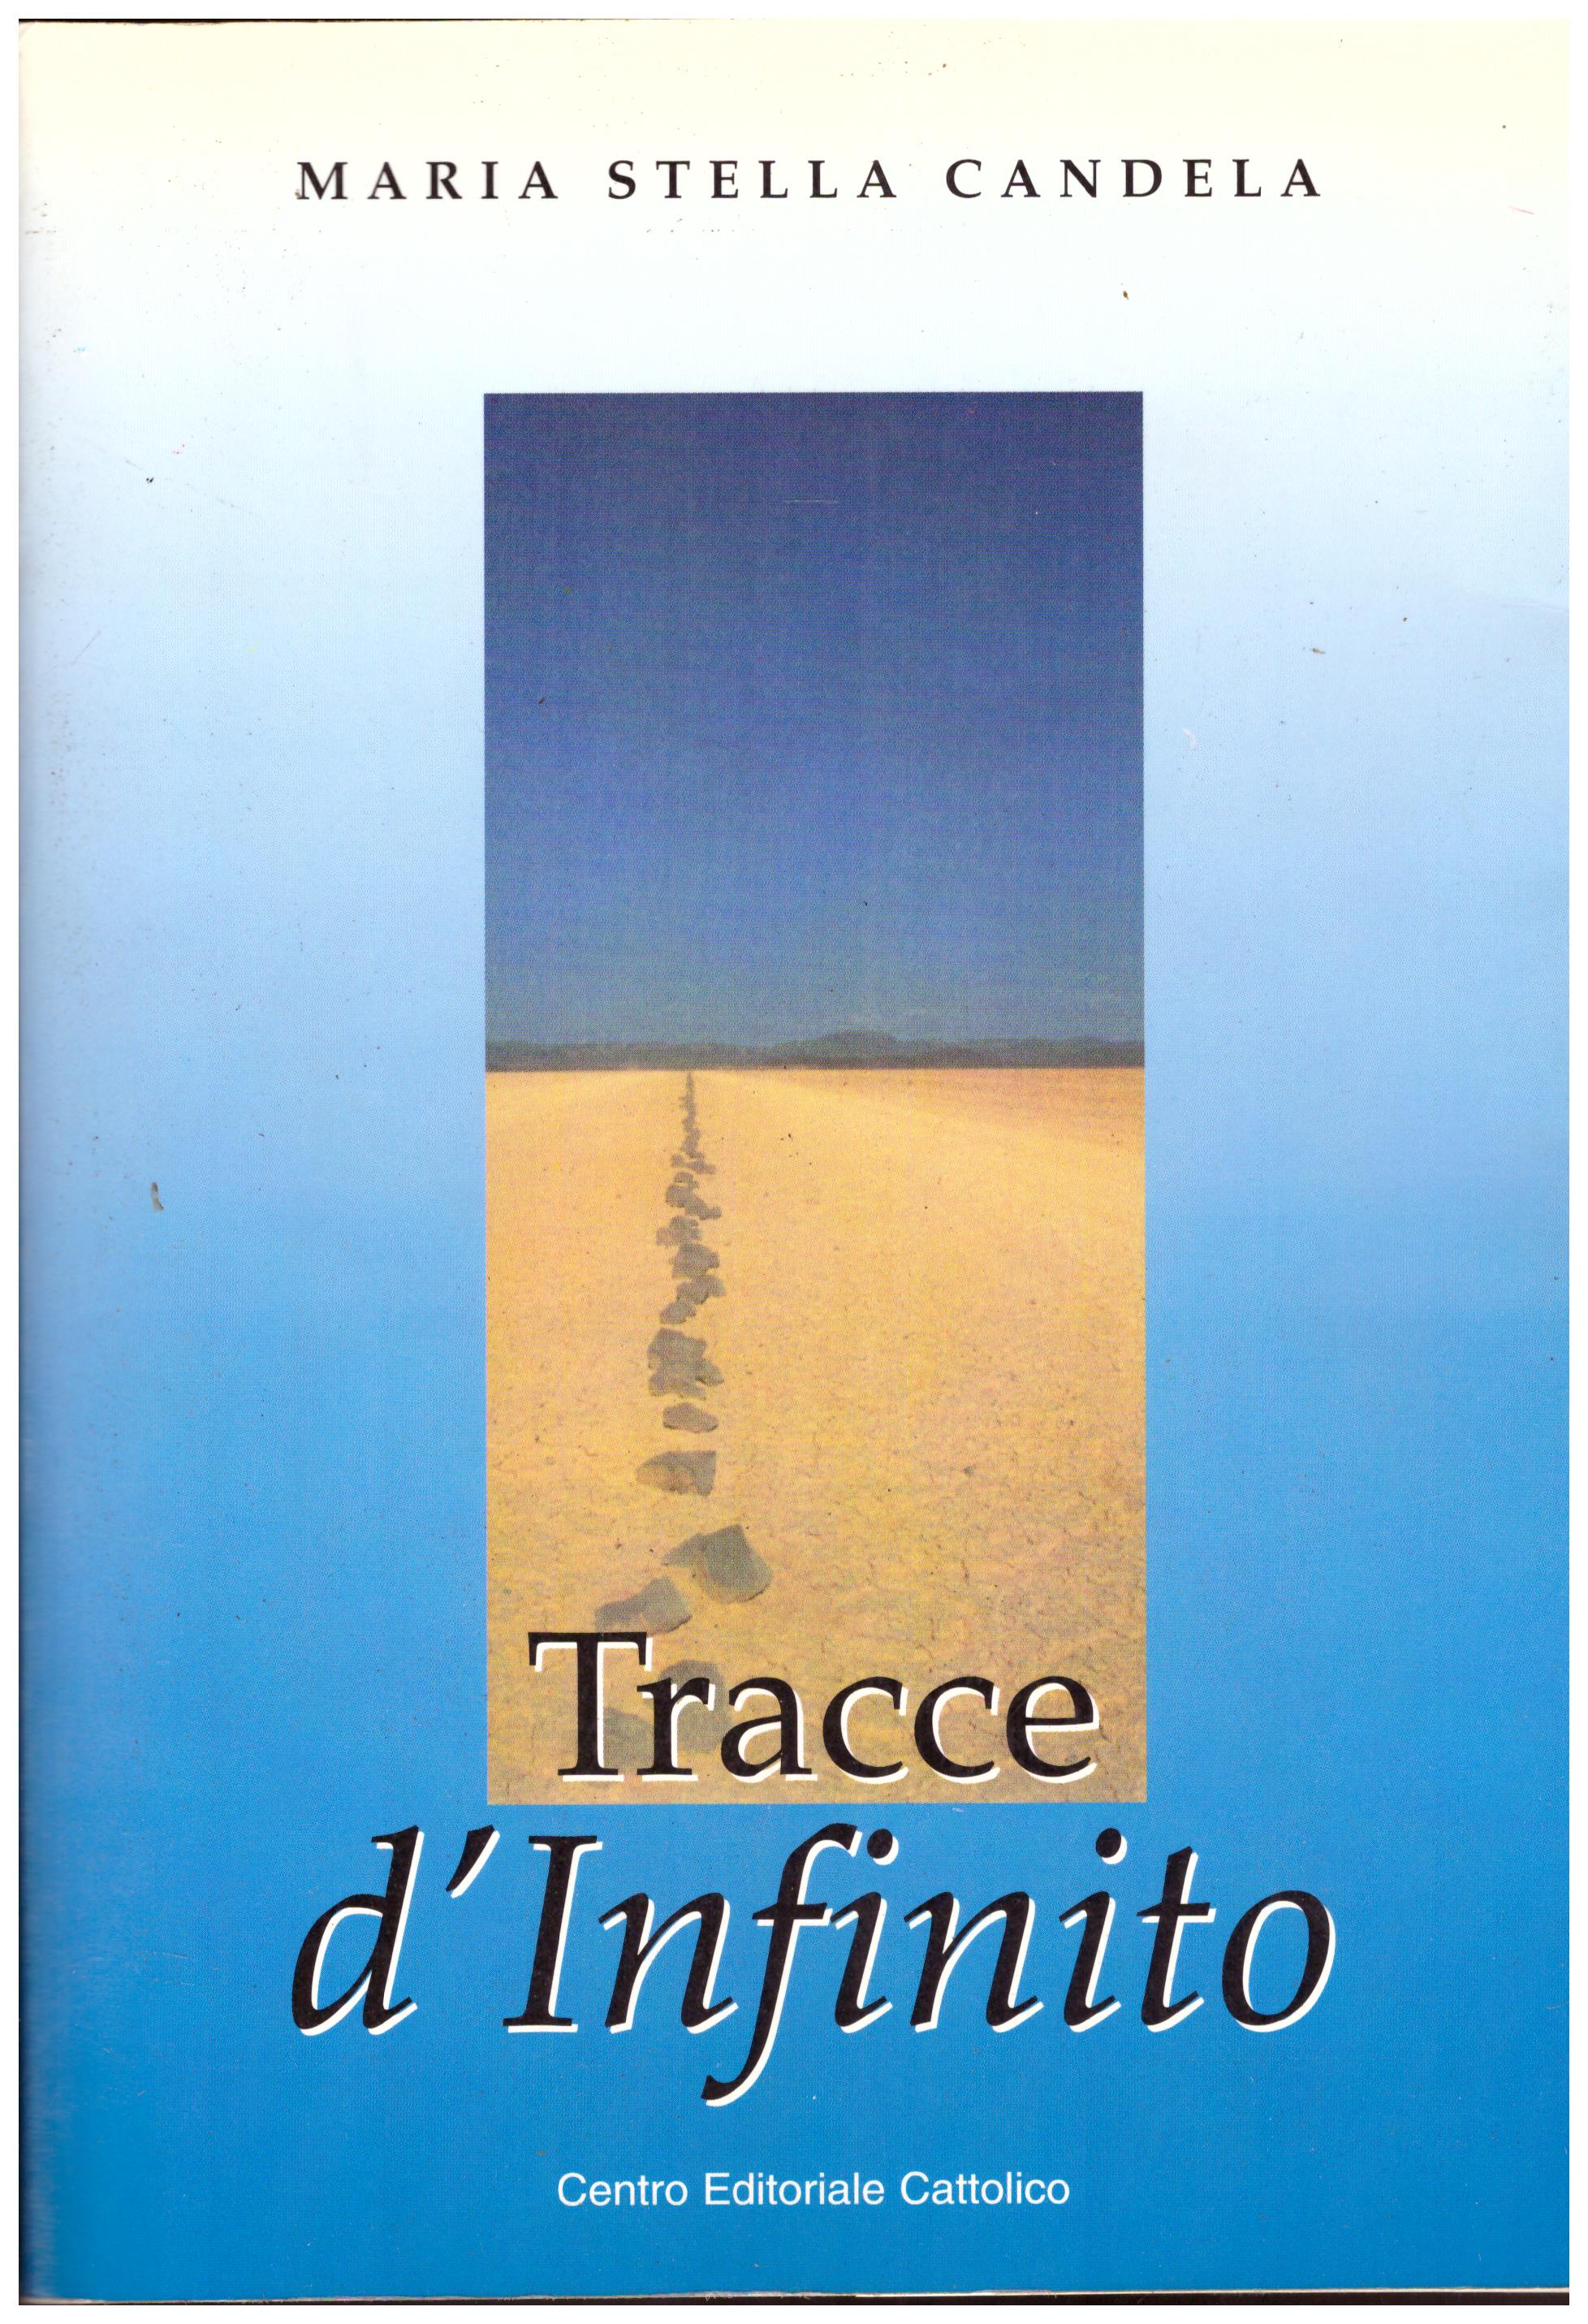 Titolo: Tracce d'infinito Autore: Maria Stella Candela Editore: Progetto editoriale mariano, 2000